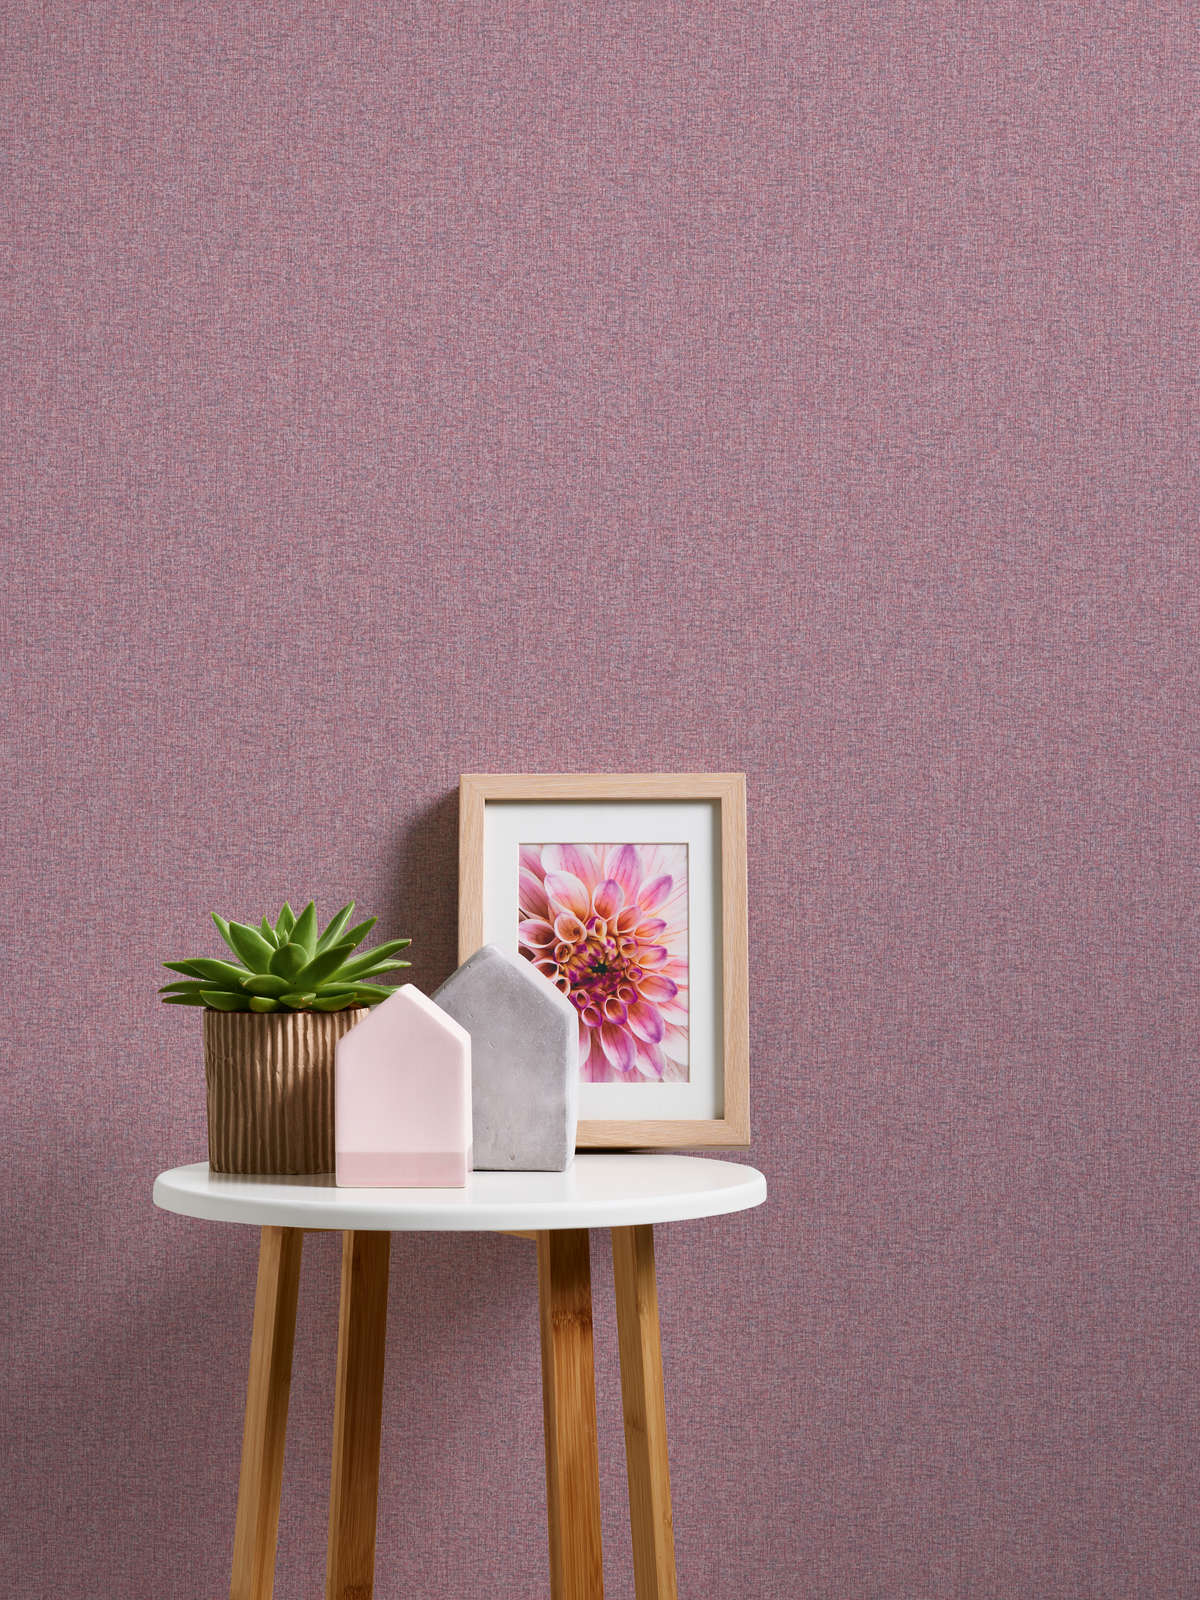             Vliestapete mit Gewebestruktur einfarbig, matt – Violett, Pink
        